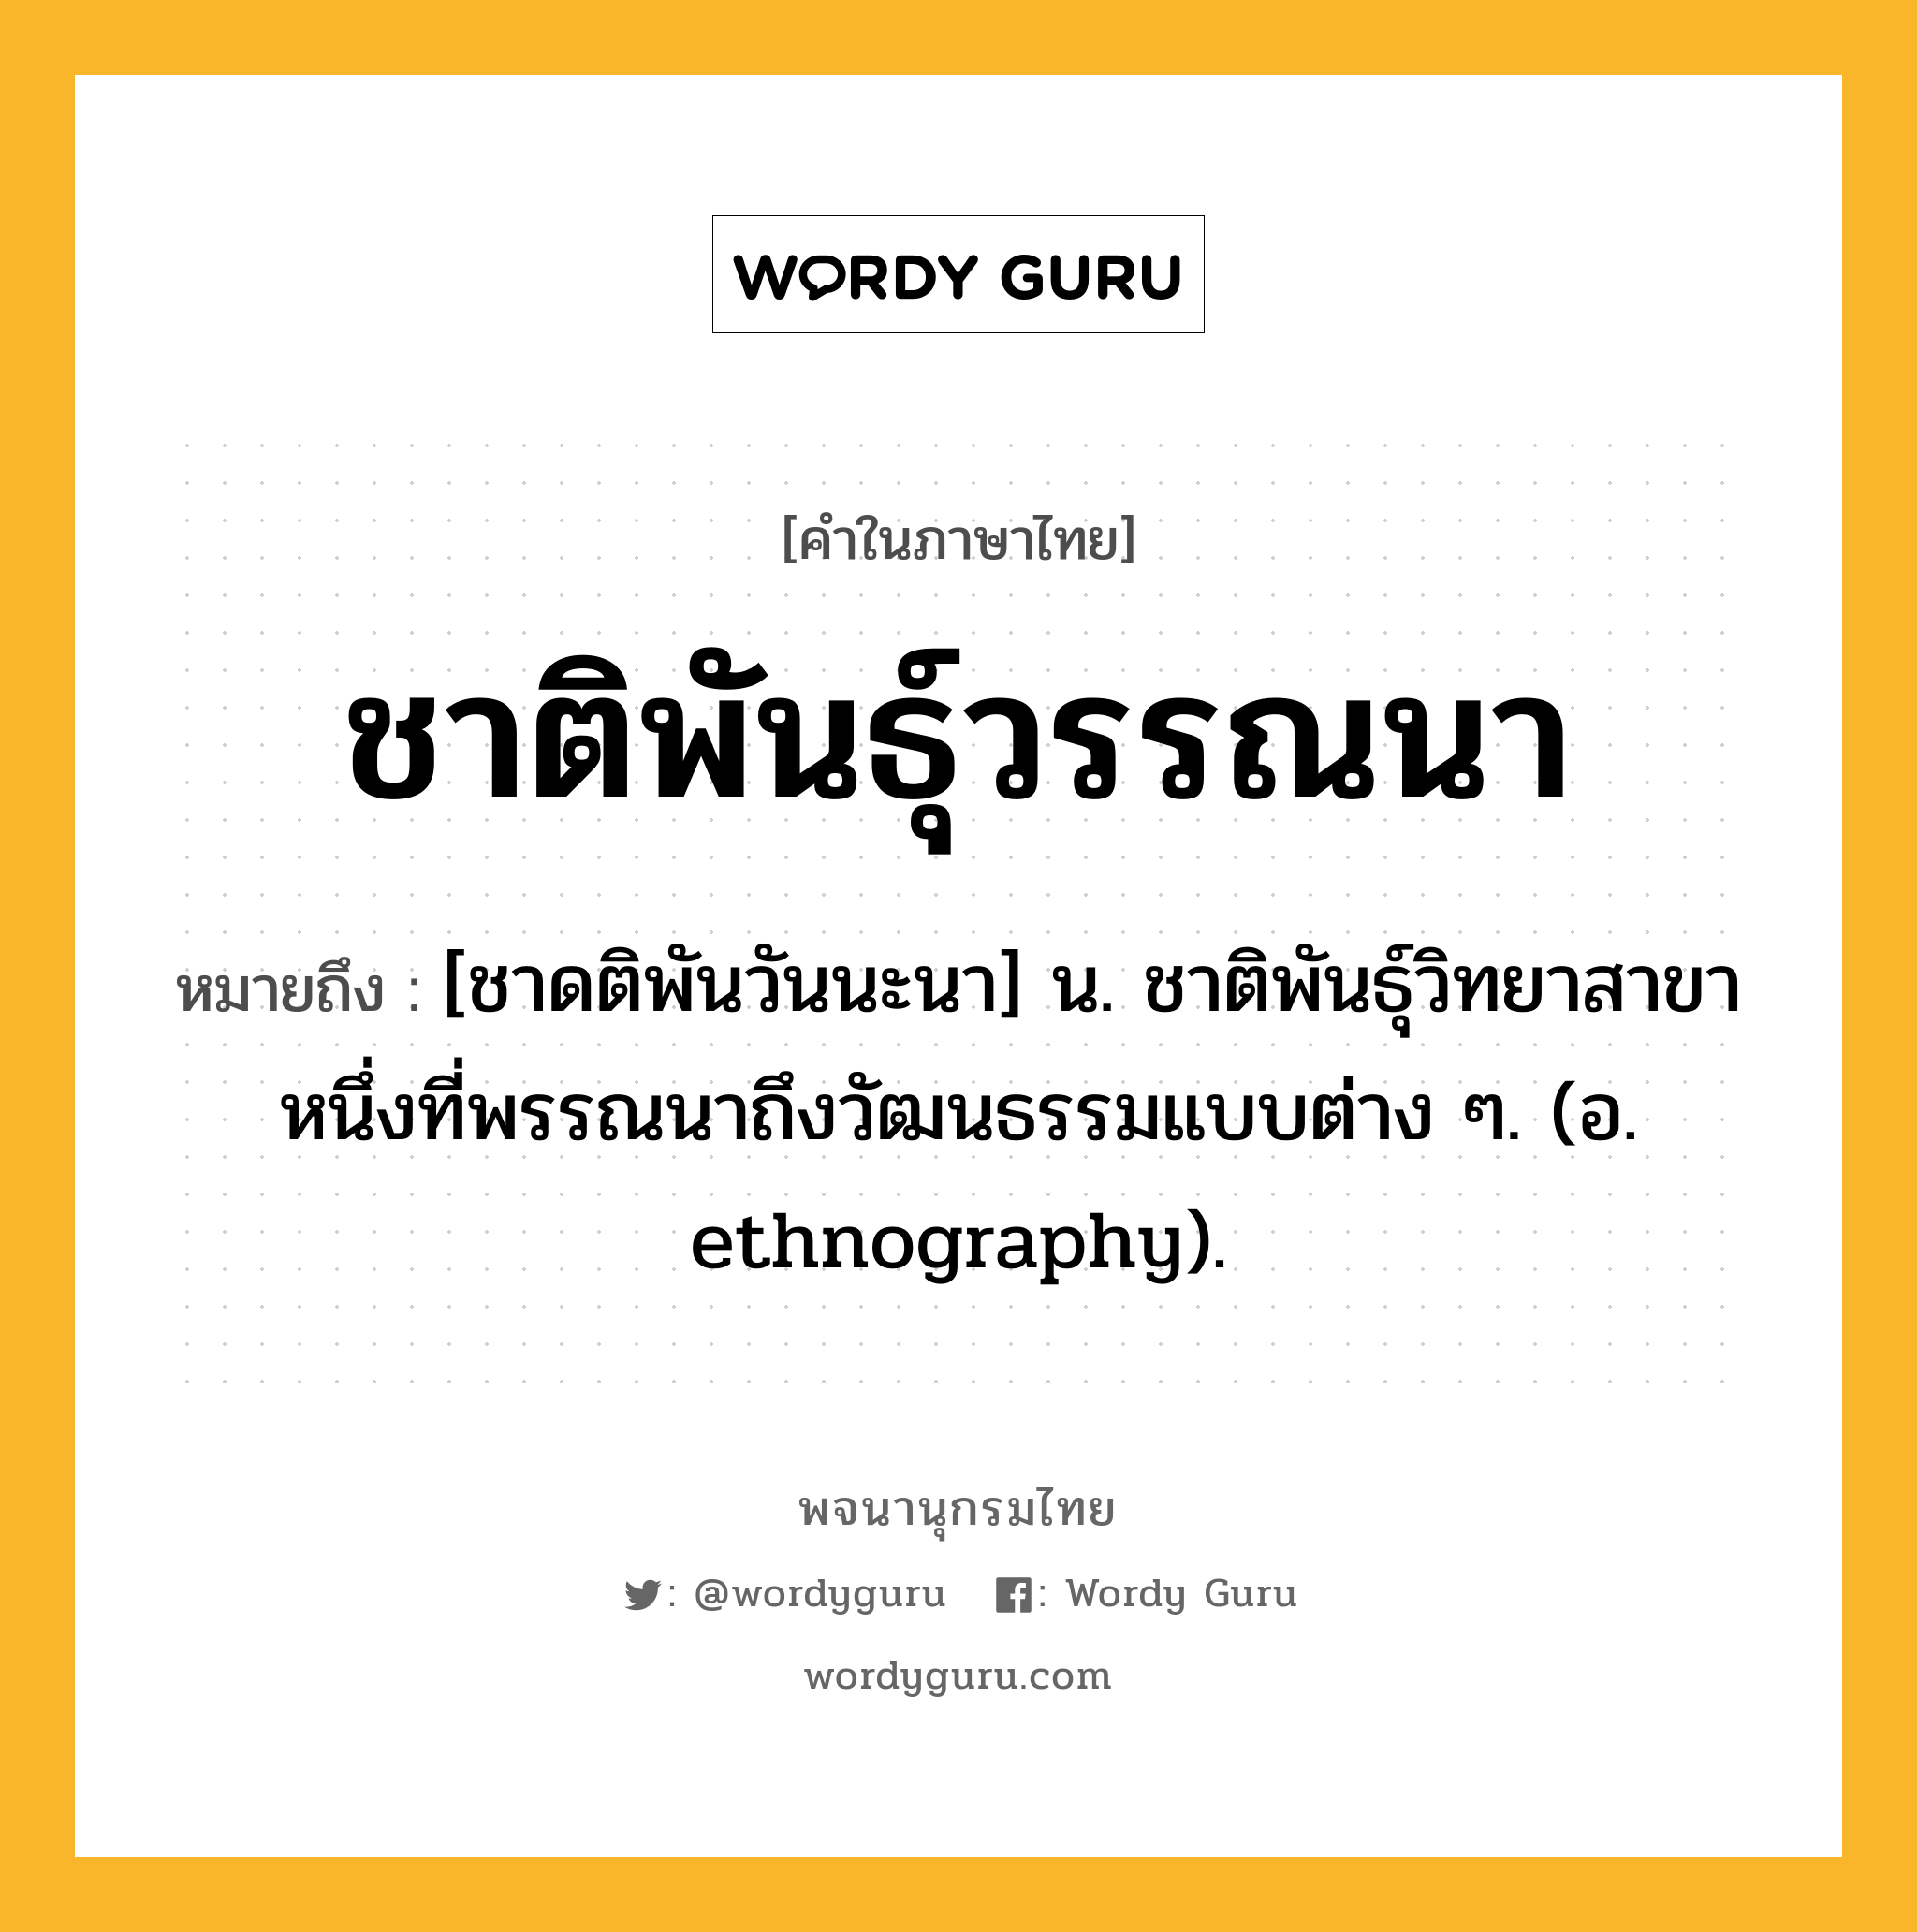 ชาติพันธุ์วรรณนา หมายถึงอะไร?, คำในภาษาไทย ชาติพันธุ์วรรณนา หมายถึง [ชาดติพันวันนะนา] น. ชาติพันธุ์วิทยาสาขาหนึ่งที่พรรณนาถึงวัฒนธรรมแบบต่าง ๆ. (อ. ethnography).